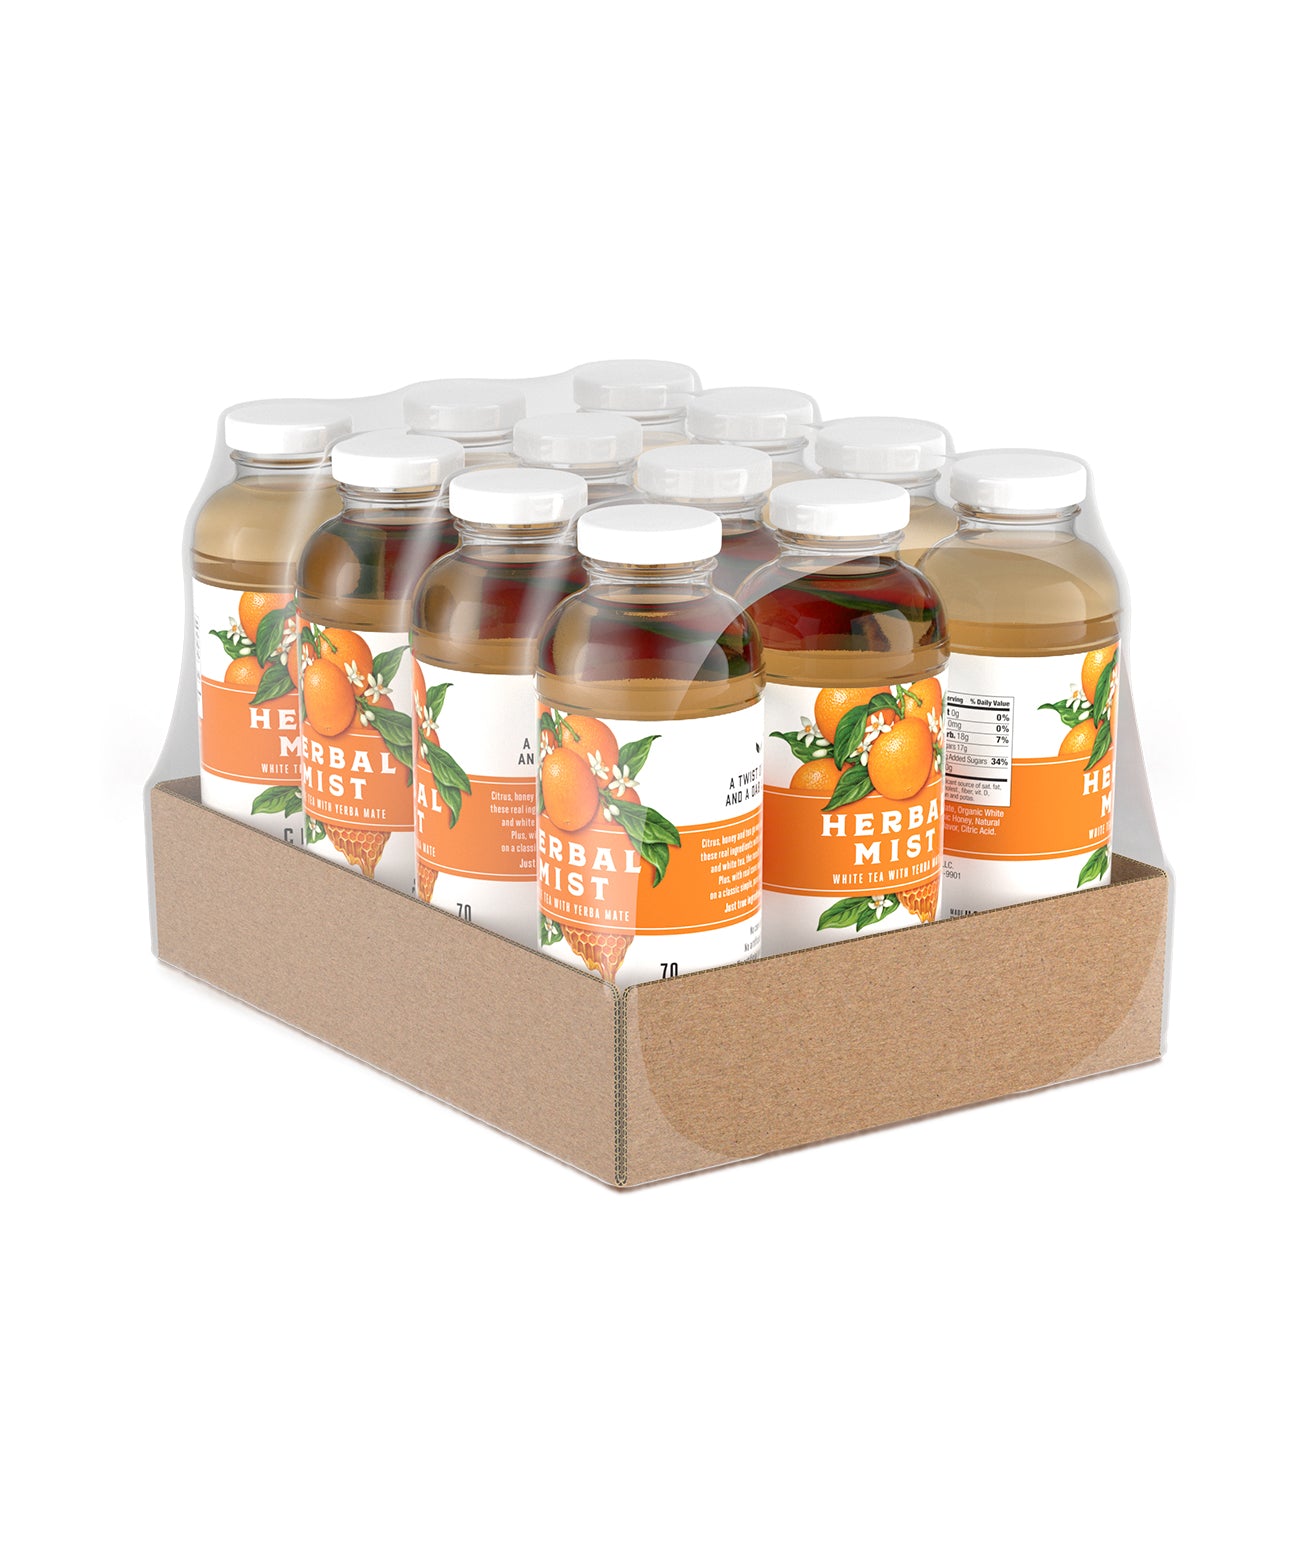 Citrus Honey White Tea & Yerba Mate (12-Pack)